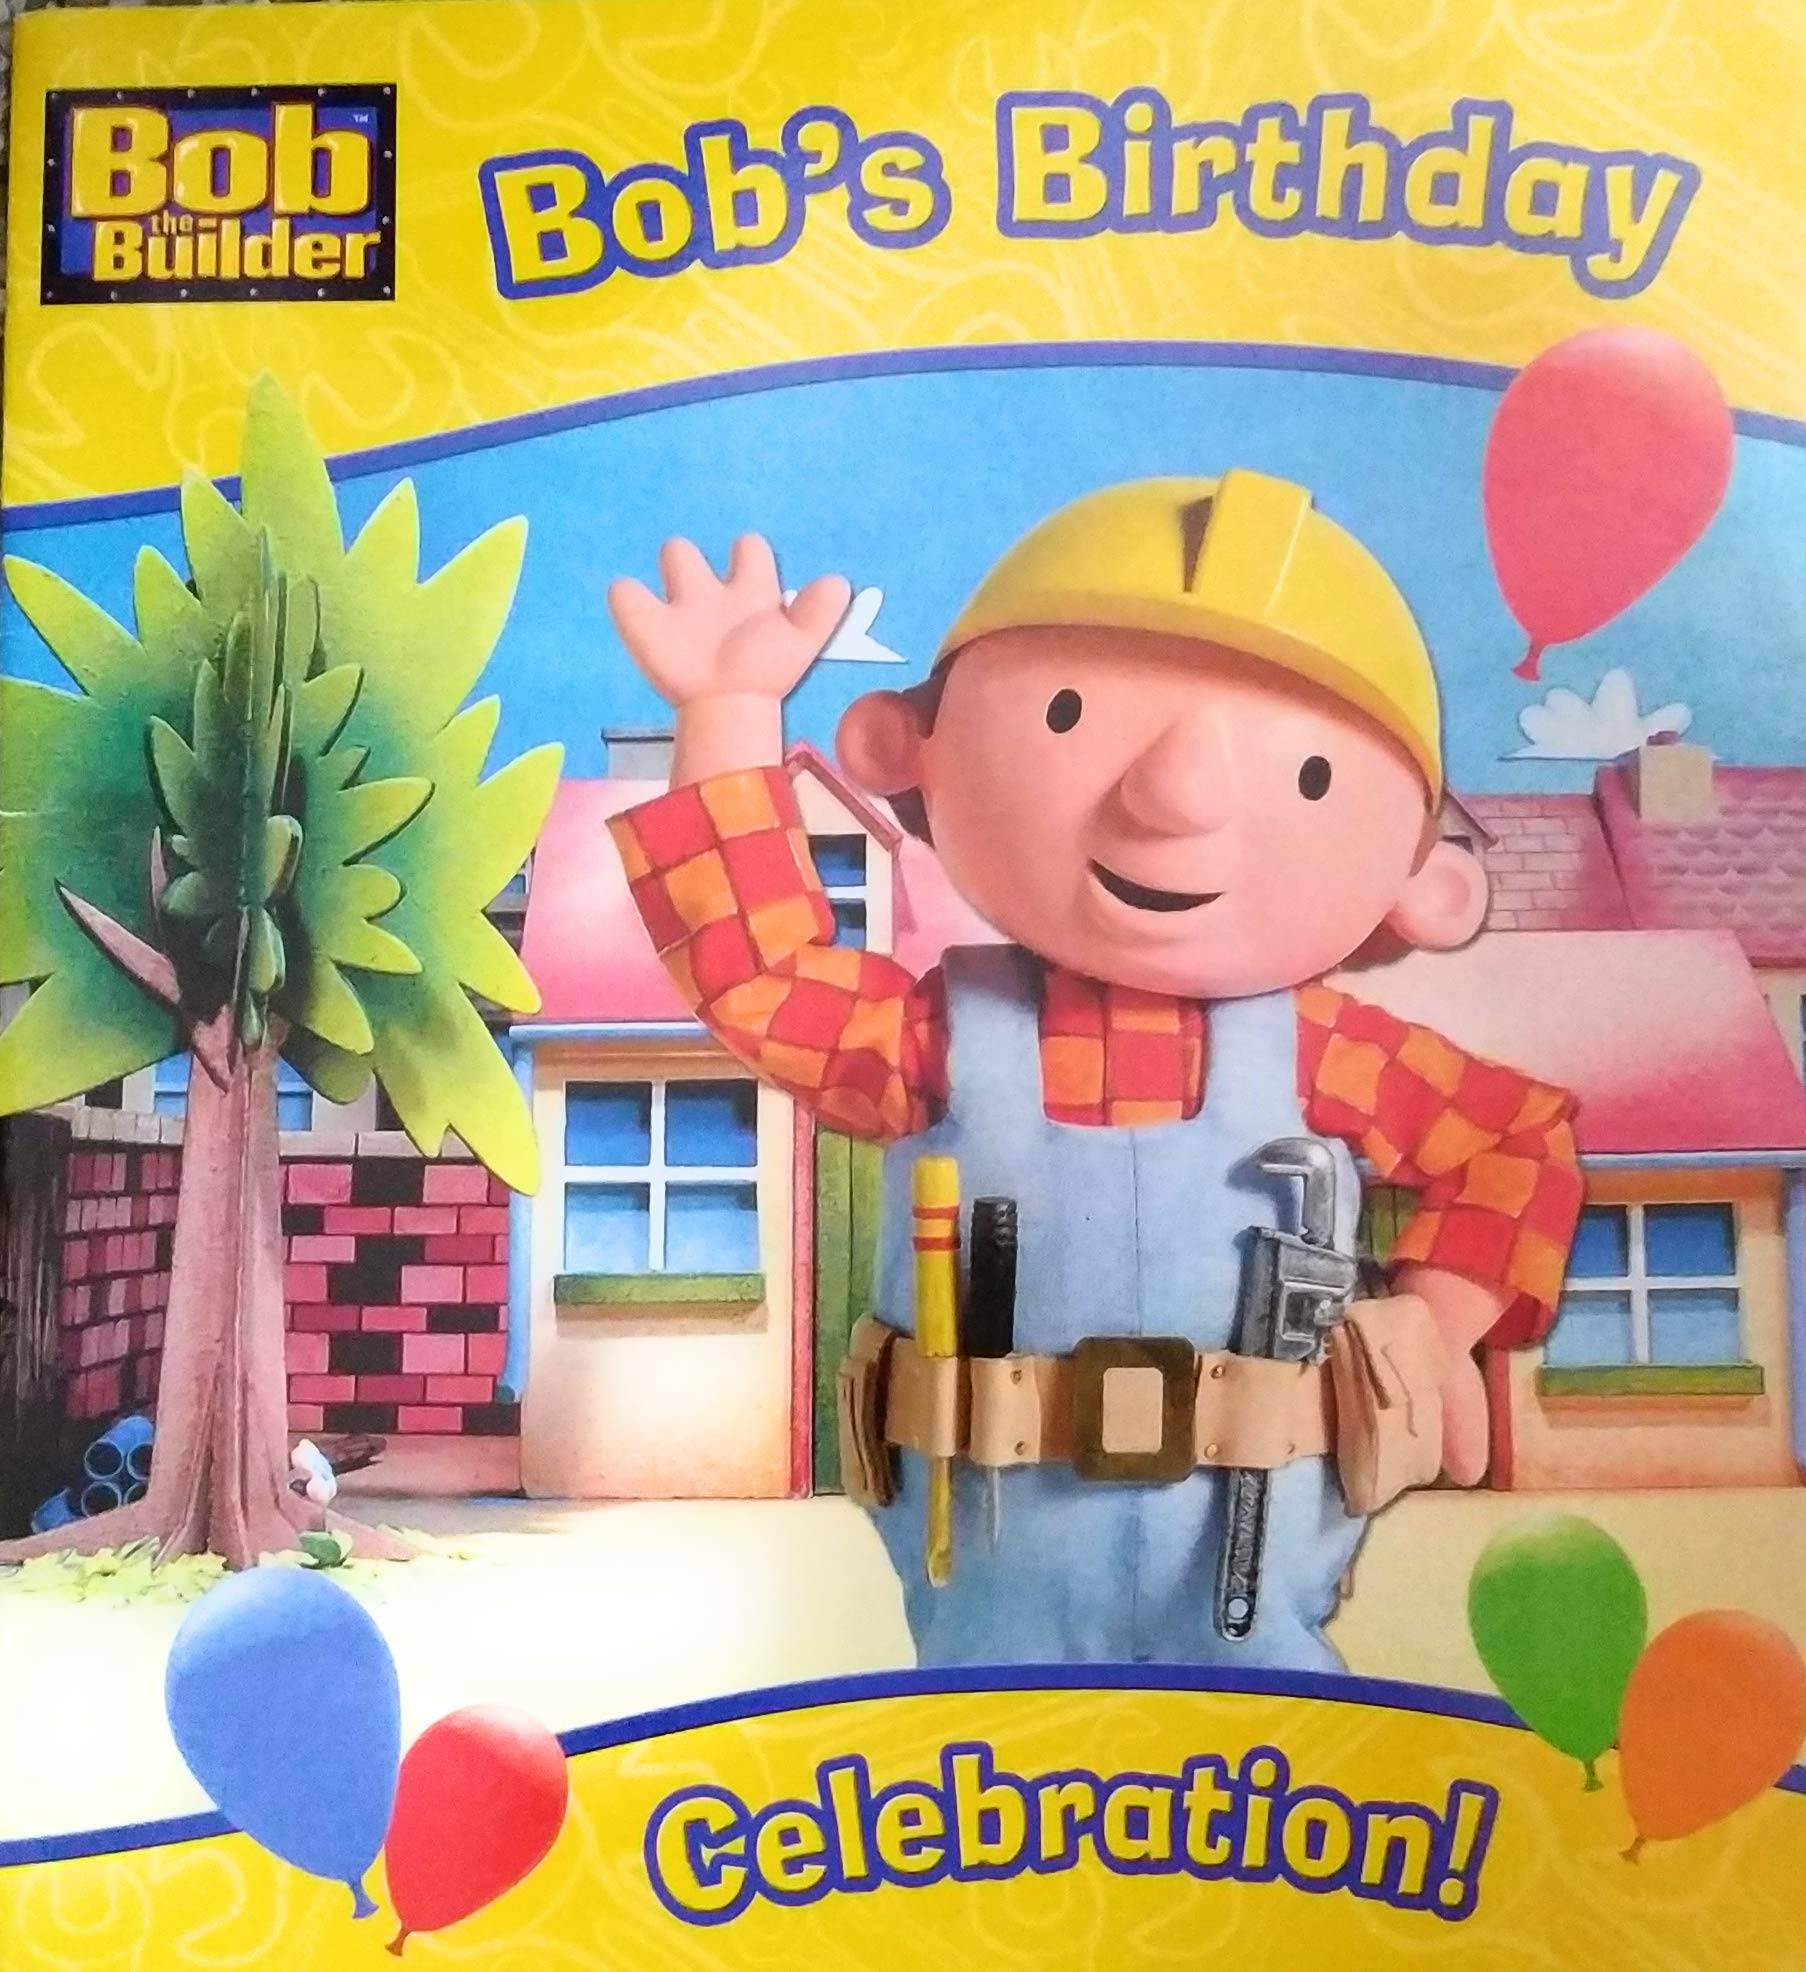 IMG : Bob the Builder Bob's Birthday Celebration